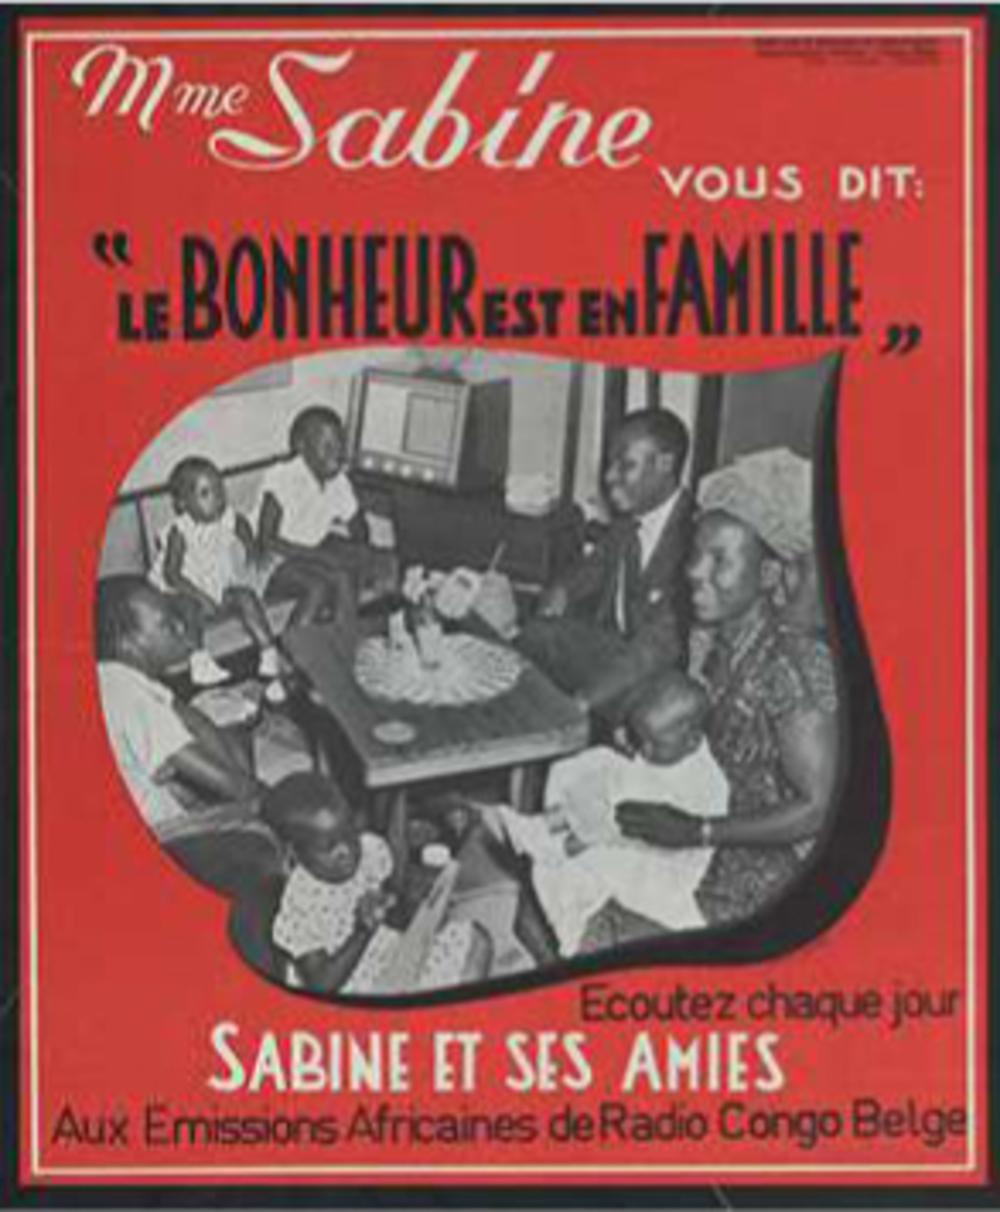 Een gezin van évolués speelt de hoofdrol in een reclamecampagne voor de uitzendingen van Radio Congo Belge.